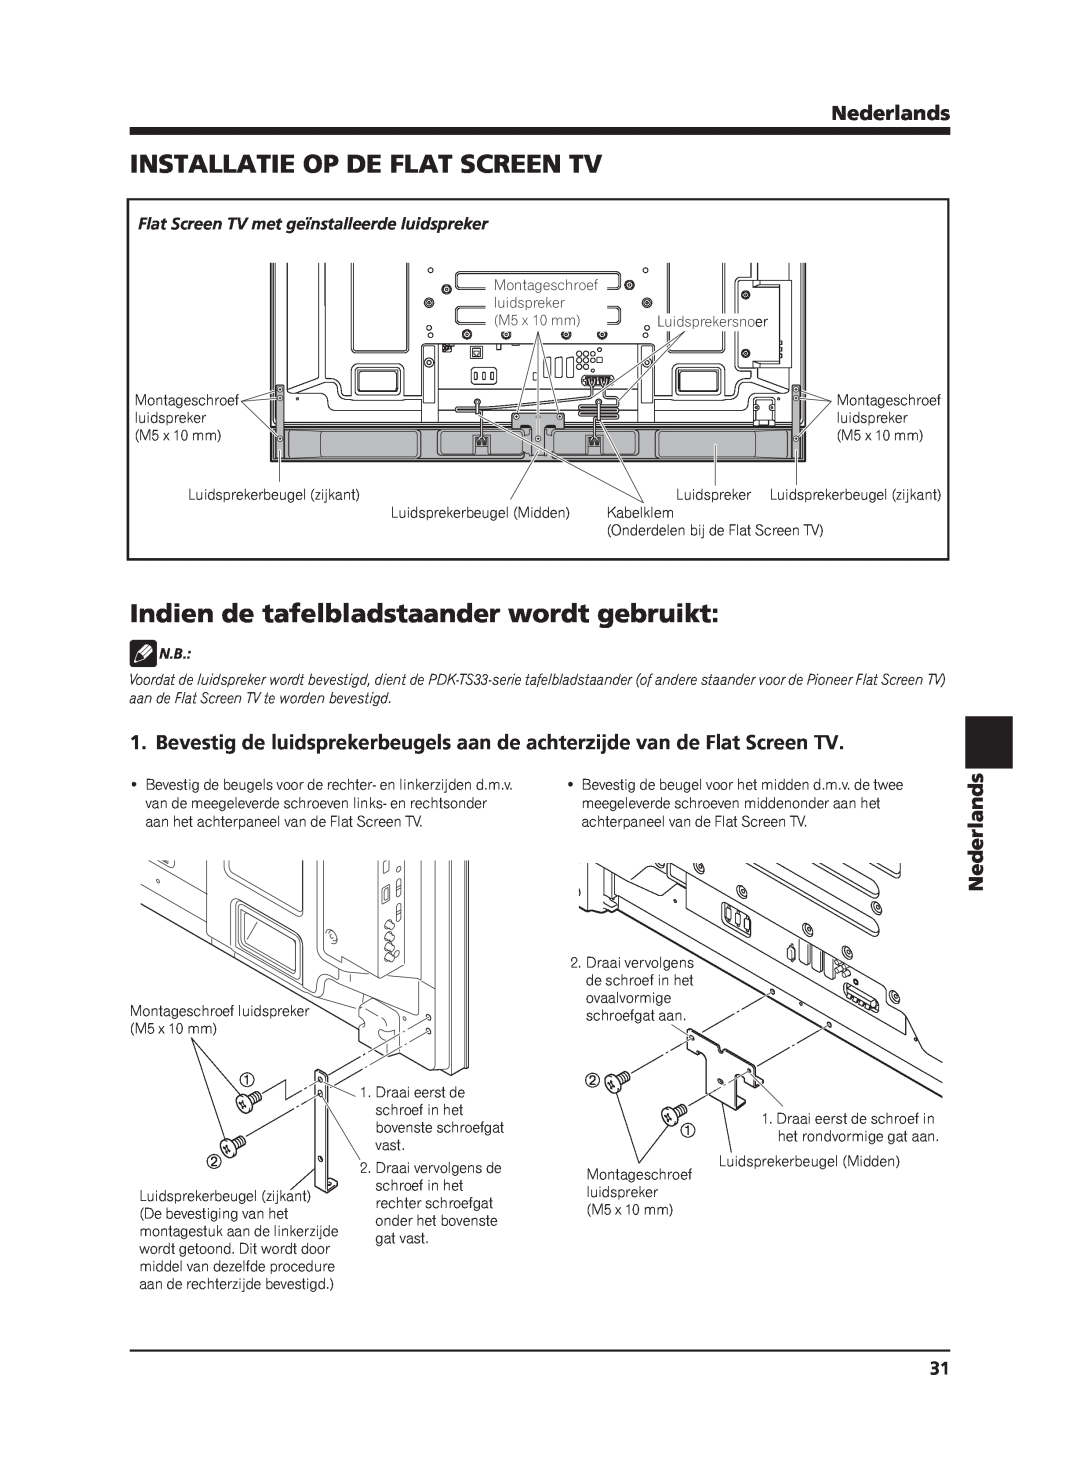 Pioneer PDP-S63 manual Installatie Op De Flat Screen Tv, Indien de tafelbladstaander wordt gebruikt, Nederlands 